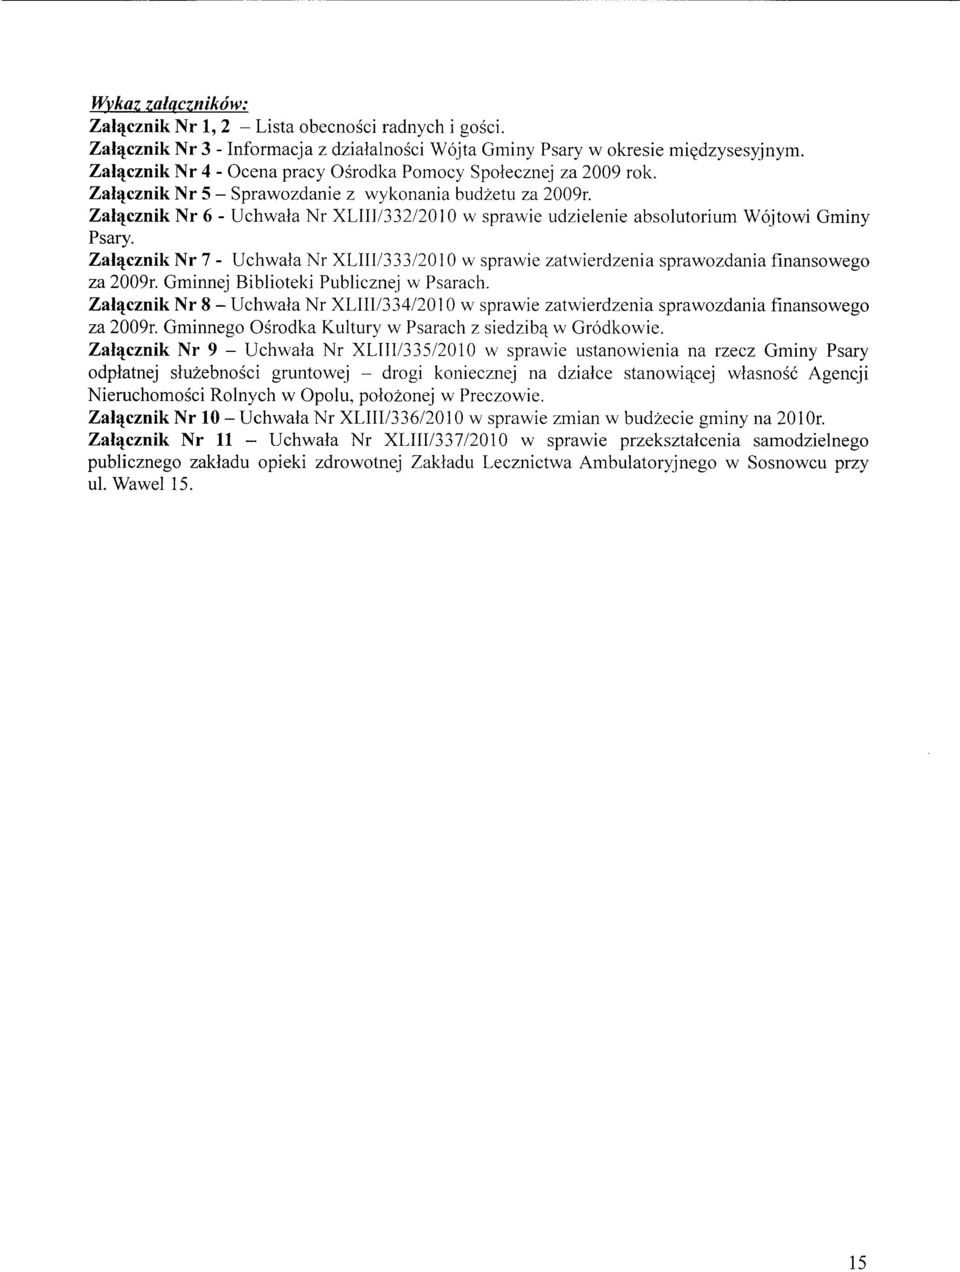 Zahjcznik Nr 6 - Uchwaia Nr XLII1/332/2010 w sprawie udzielenie absolutorium Wojtowi Gminy Psary. Zaljjcznik Nr 7 - Uchwaia Nr XLIII/333/2010 w sprawie zatwierdzenia sprawozdania finansowego za 2009r.